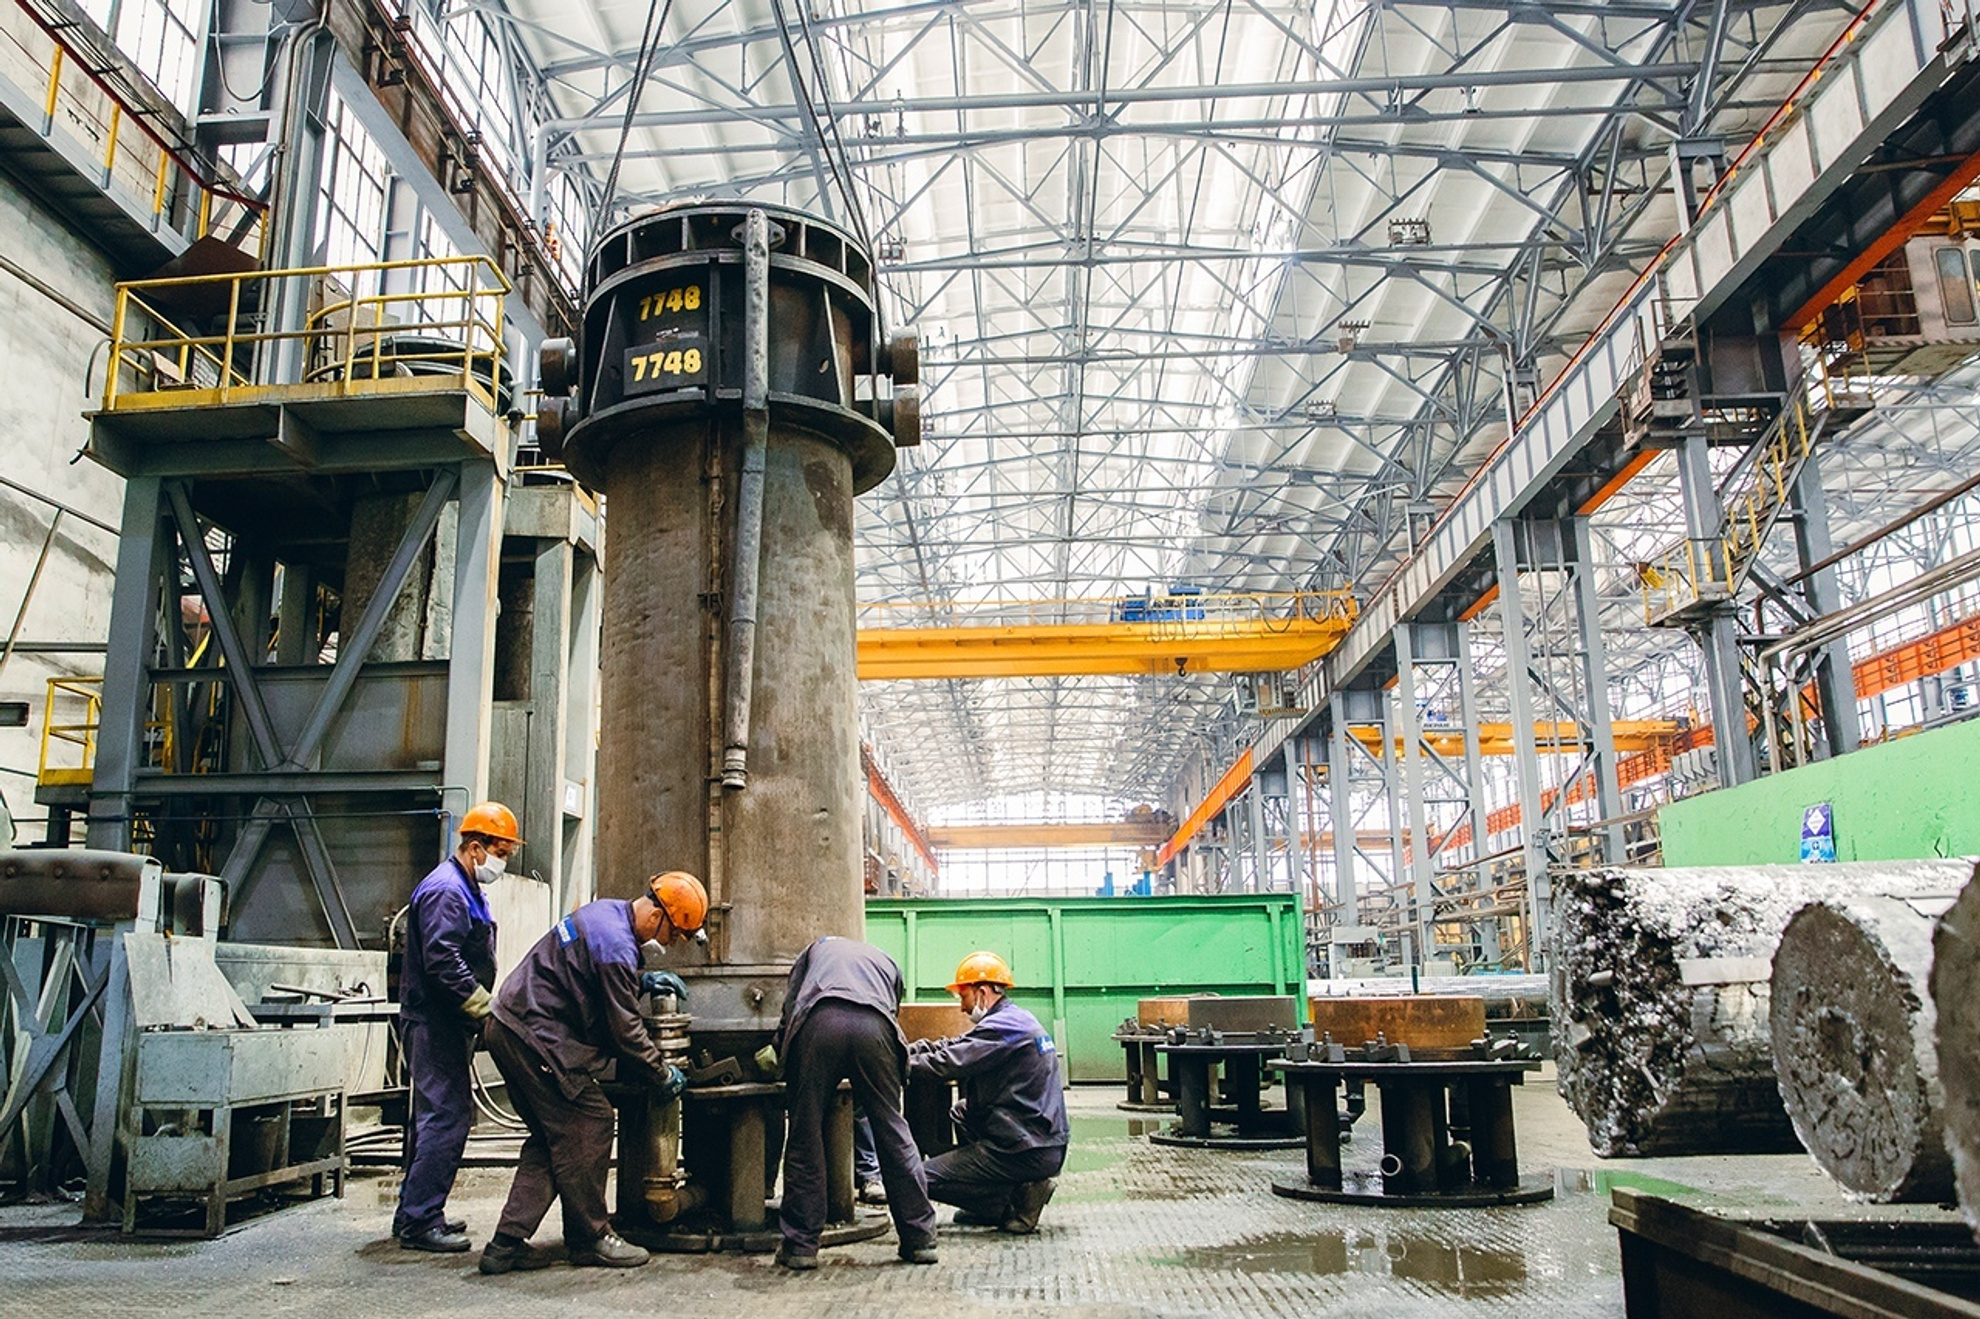 Уральский завод-гигант второй раз за год повысил зарплаты своим работникам. Кому больше всего платят